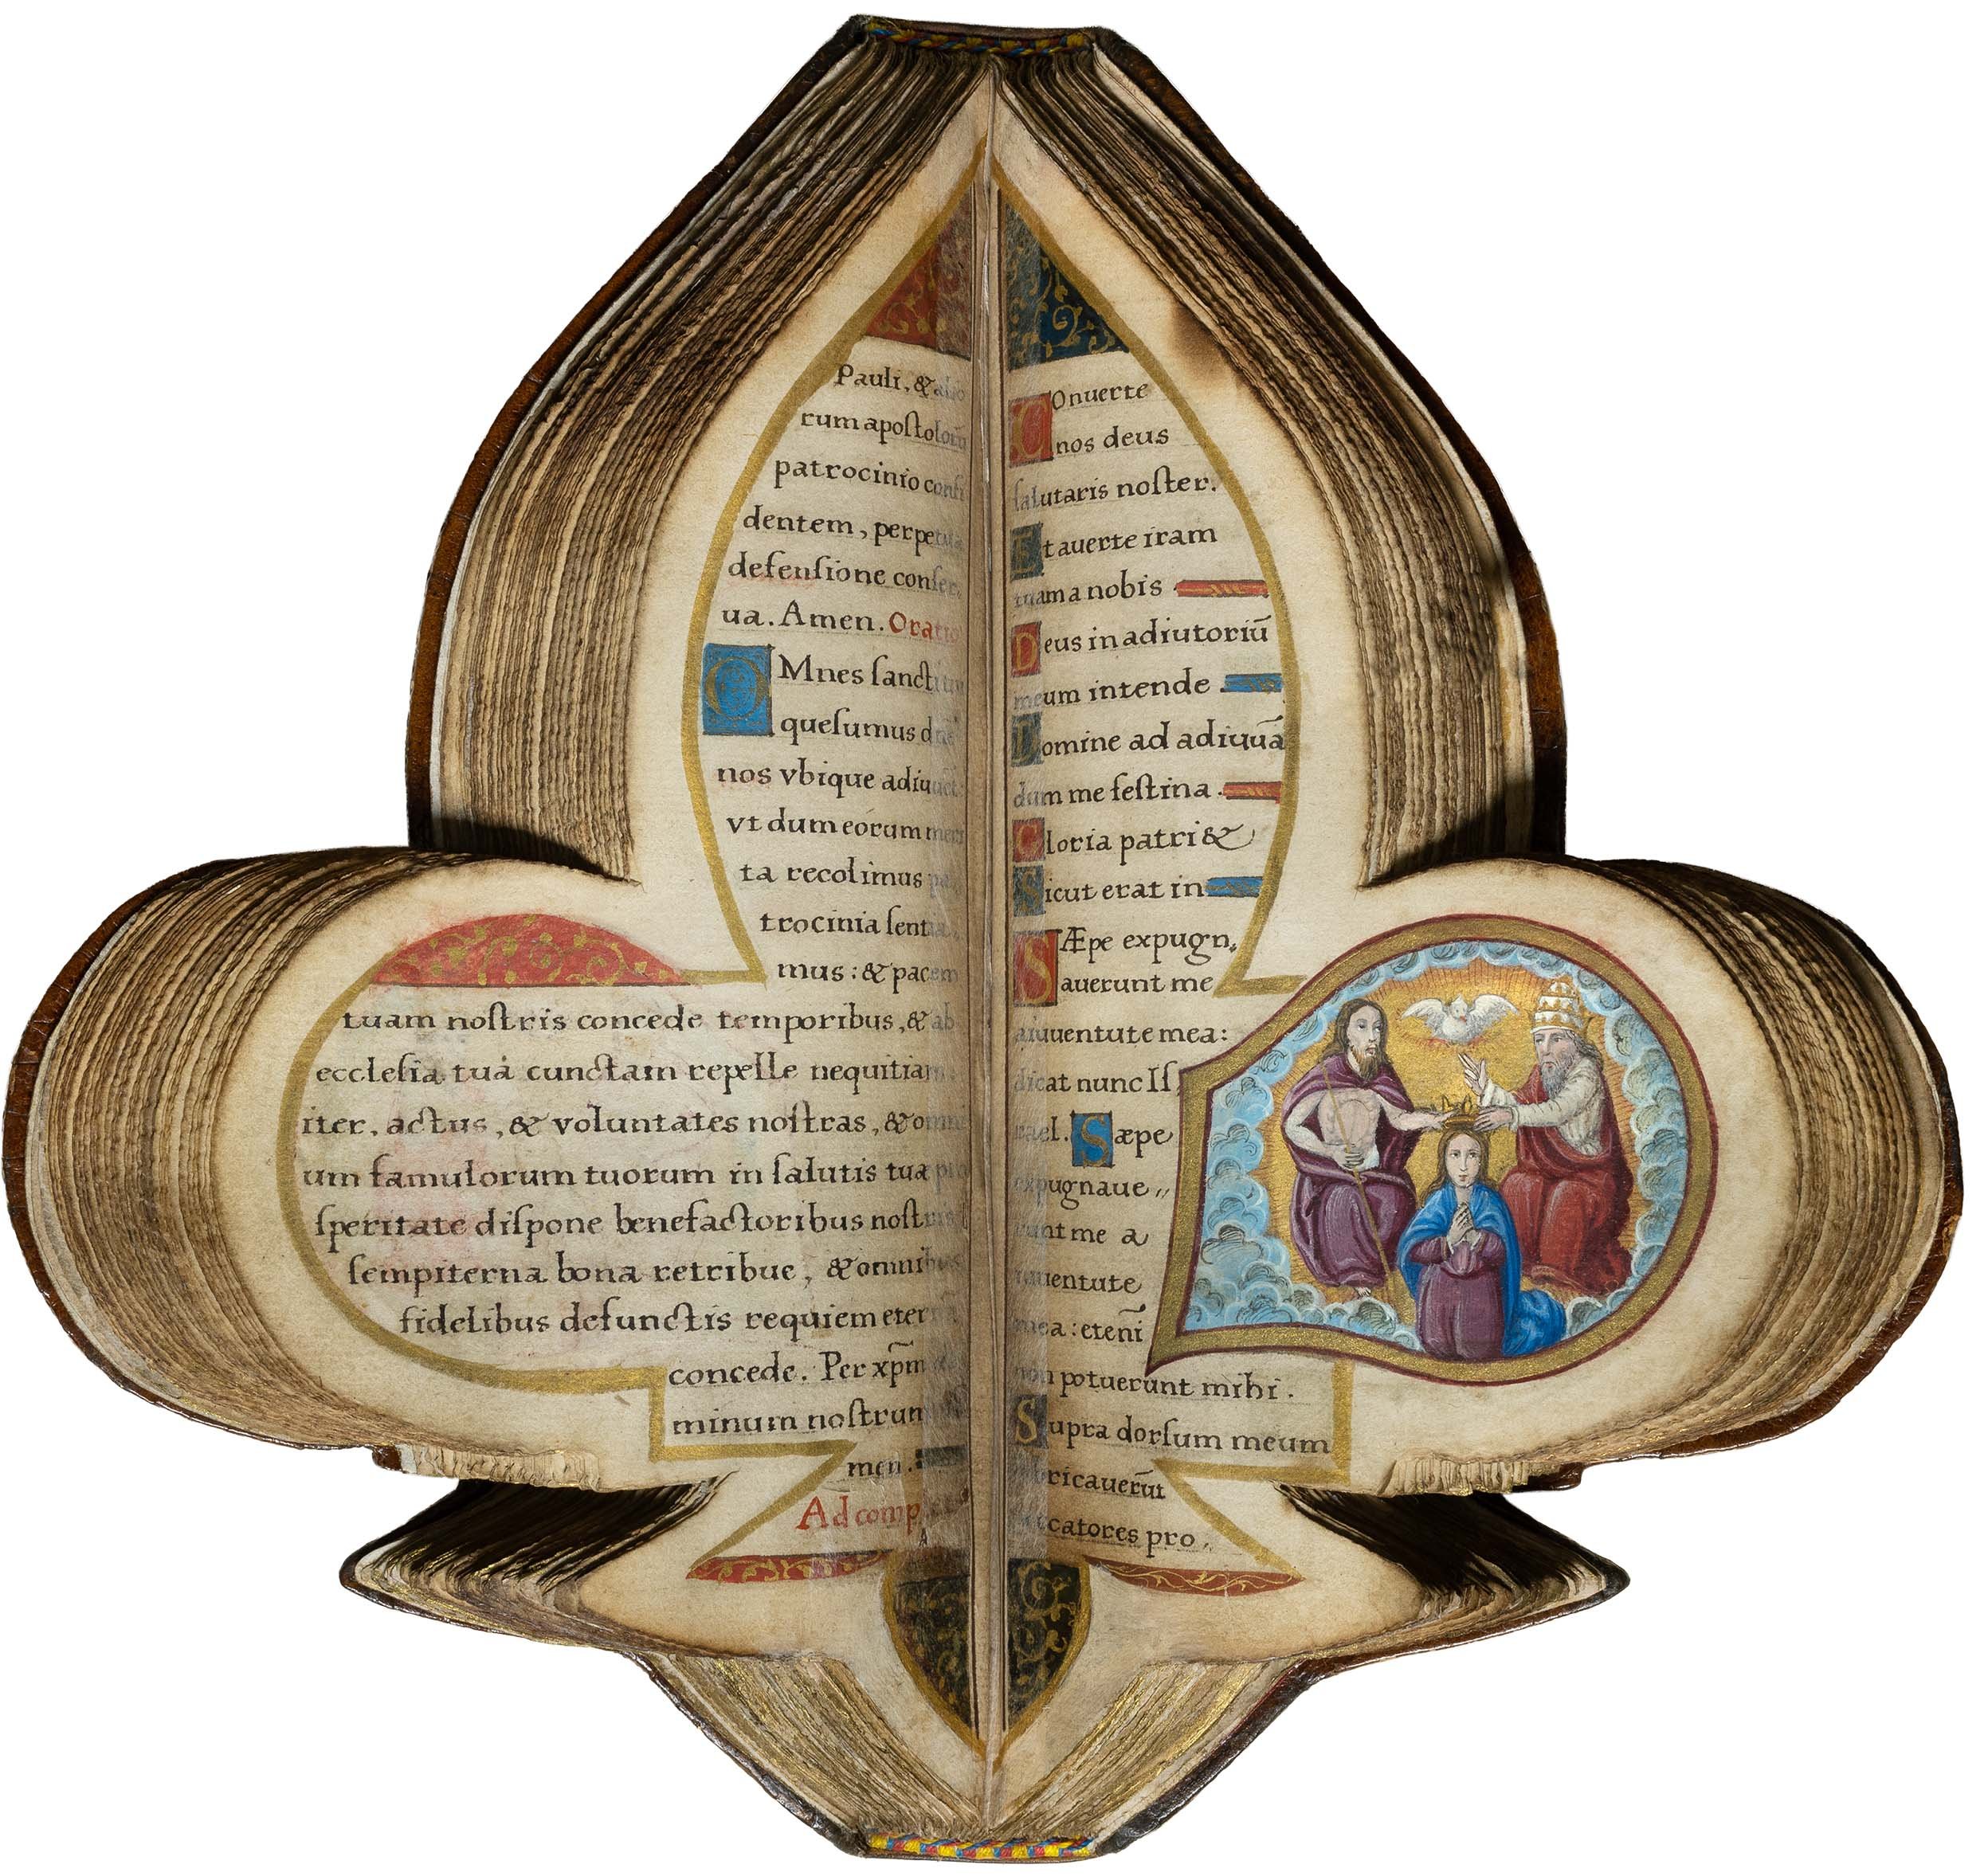 Book-of-hours-bourbon-lily-shape-manuscript-napoleon-beauharnais-combermere-paris-16th-century-20.jpg